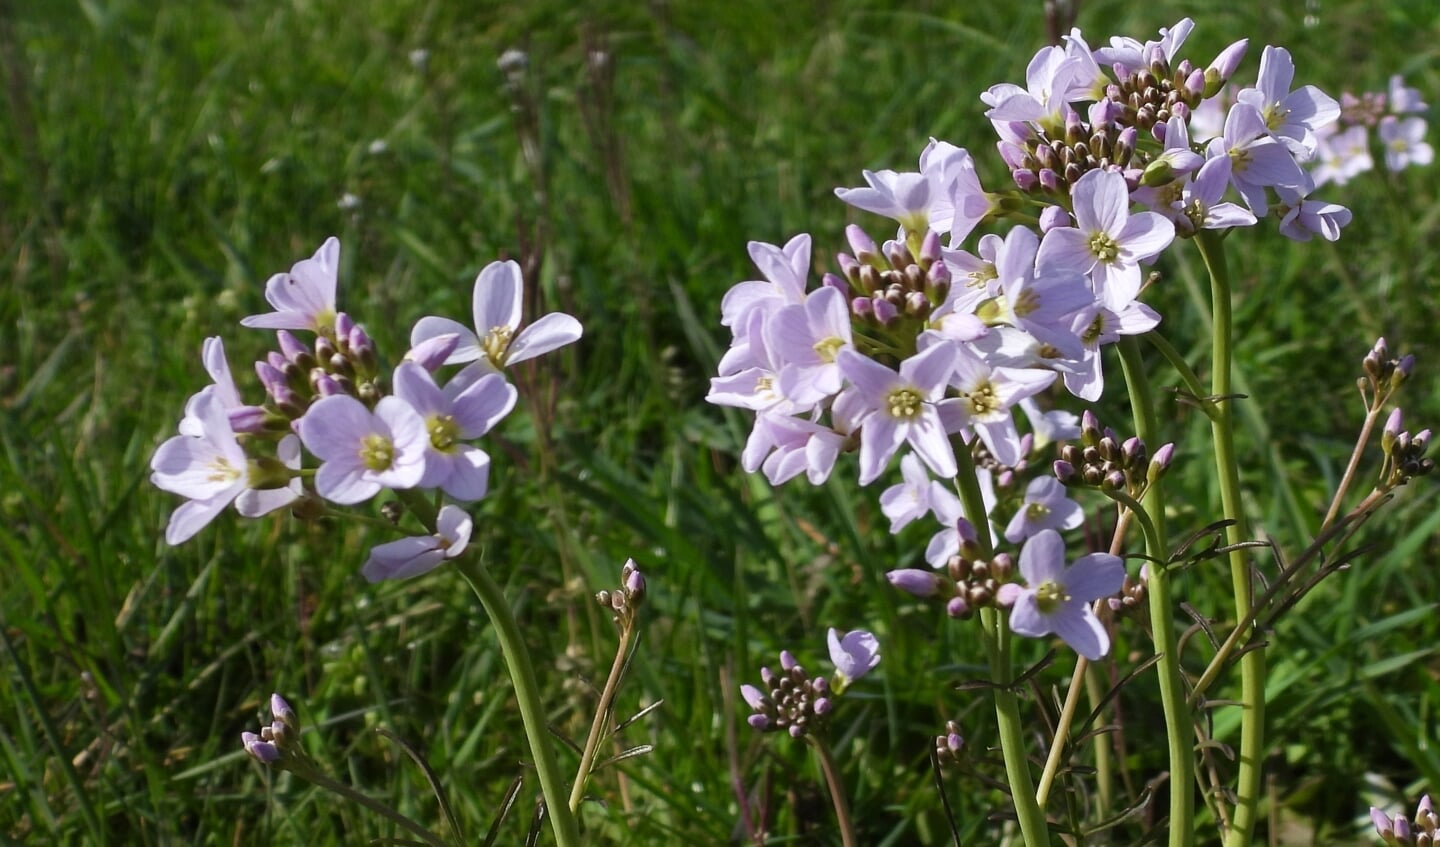 De bloemkleur is meestal lichtroze maar varieert tussen wit en donkerroze.
